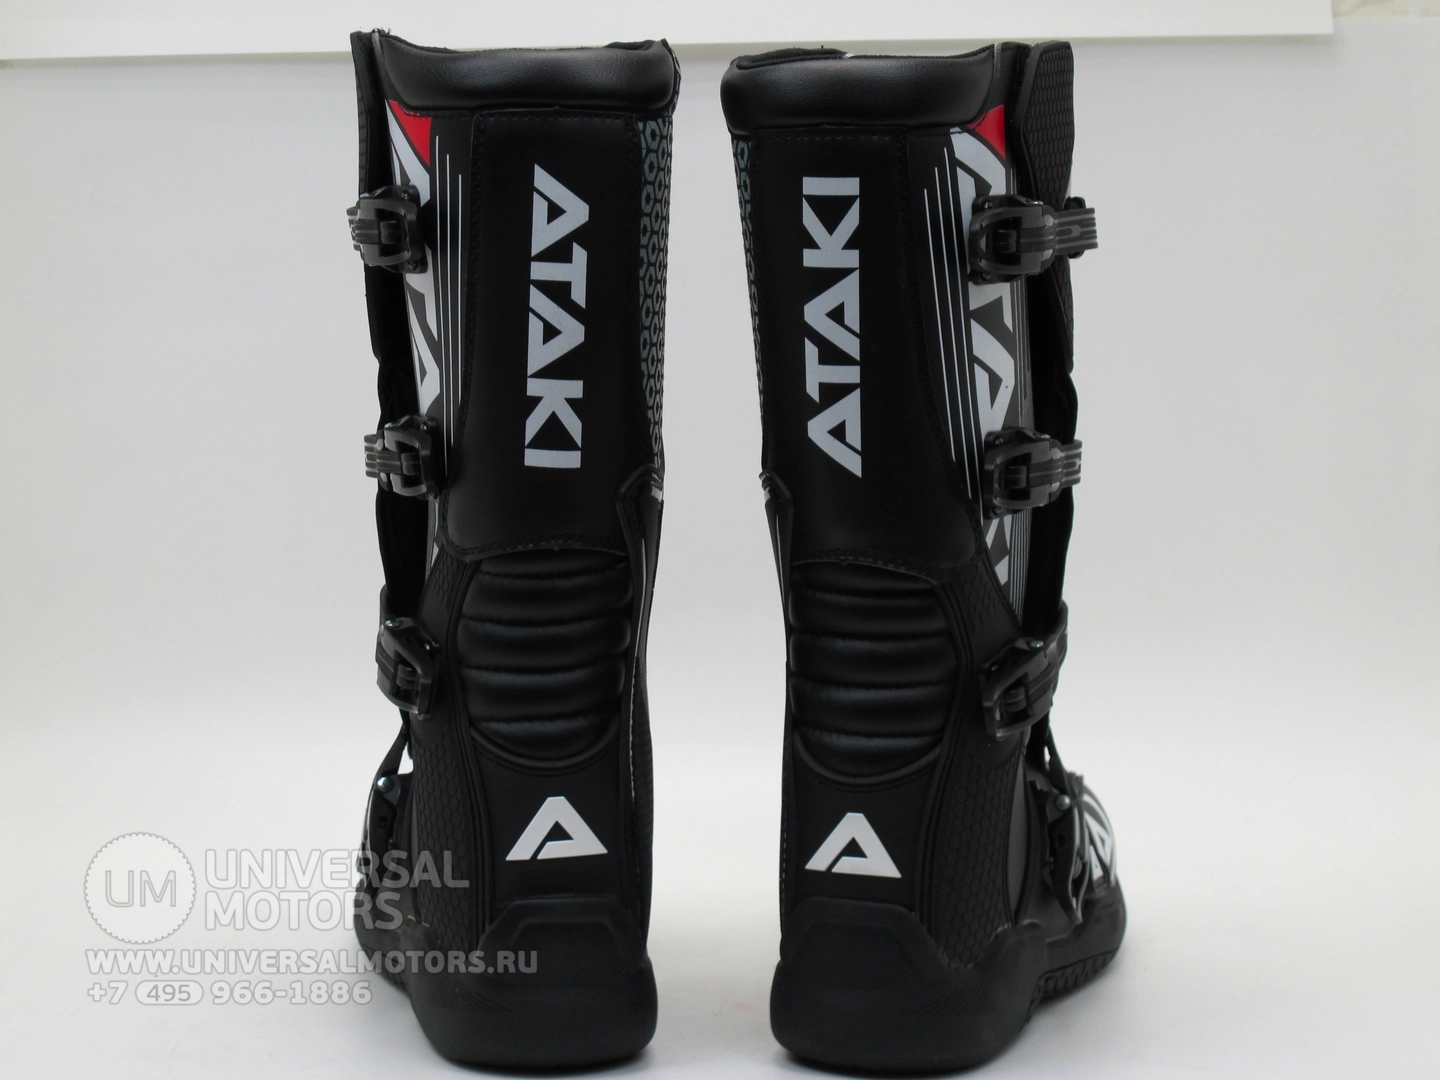 Мотоботы Ataki кроссовые MX-001 черные, Размер 43